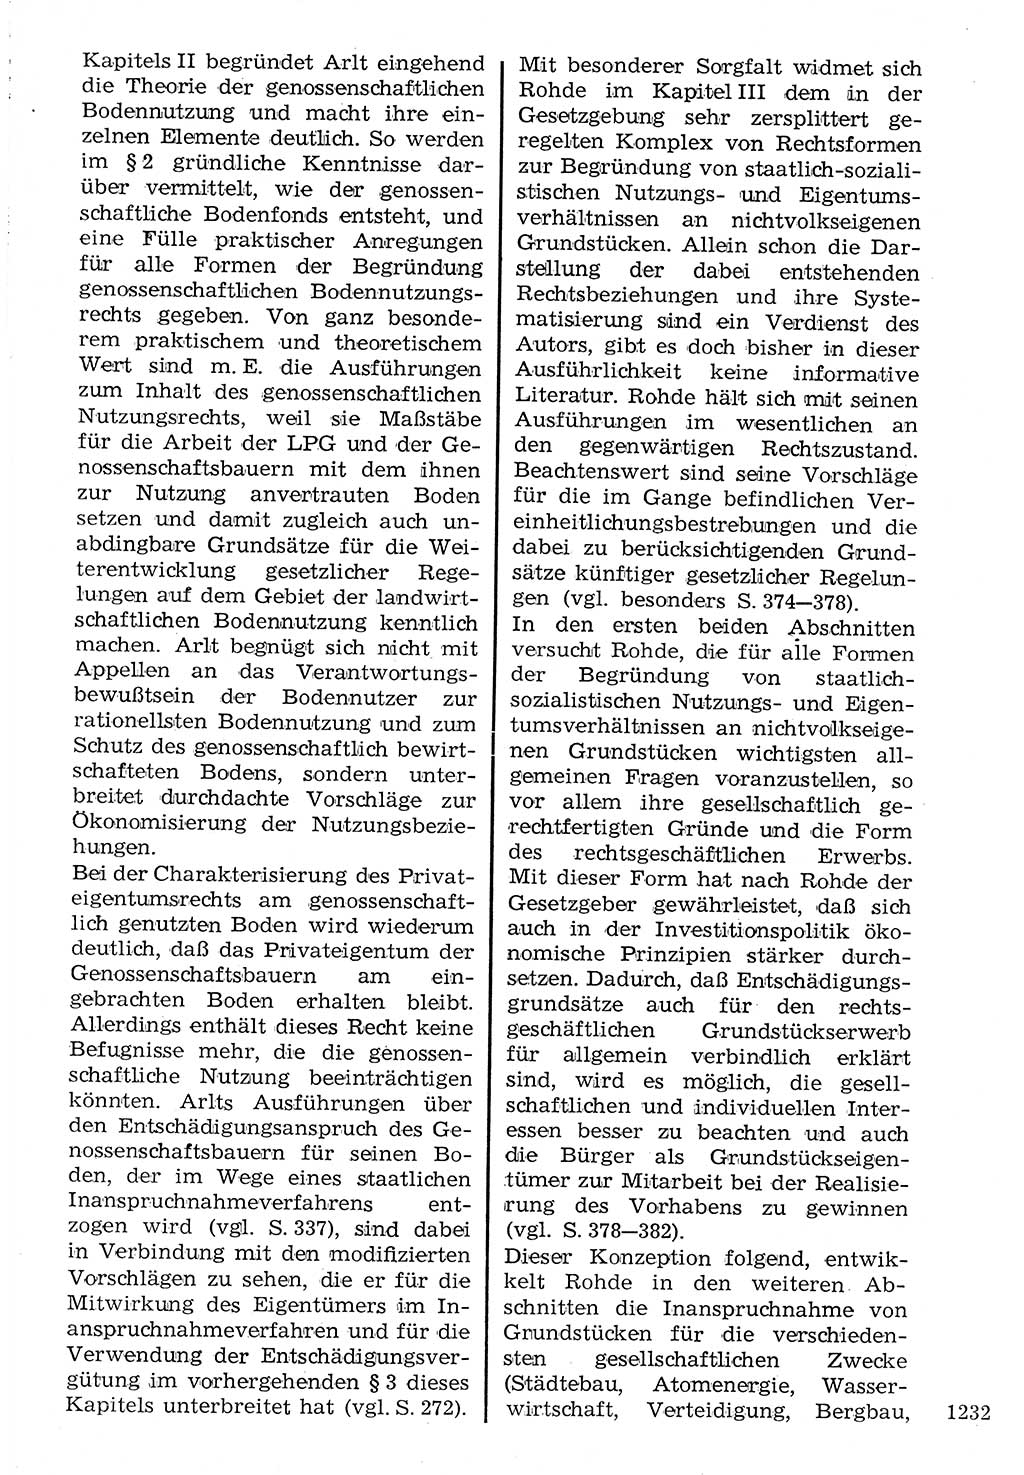 Staat und Recht (StuR), 17. Jahrgang [Deutsche Demokratische Republik (DDR)] 1968, Seite 1232 (StuR DDR 1968, S. 1232)